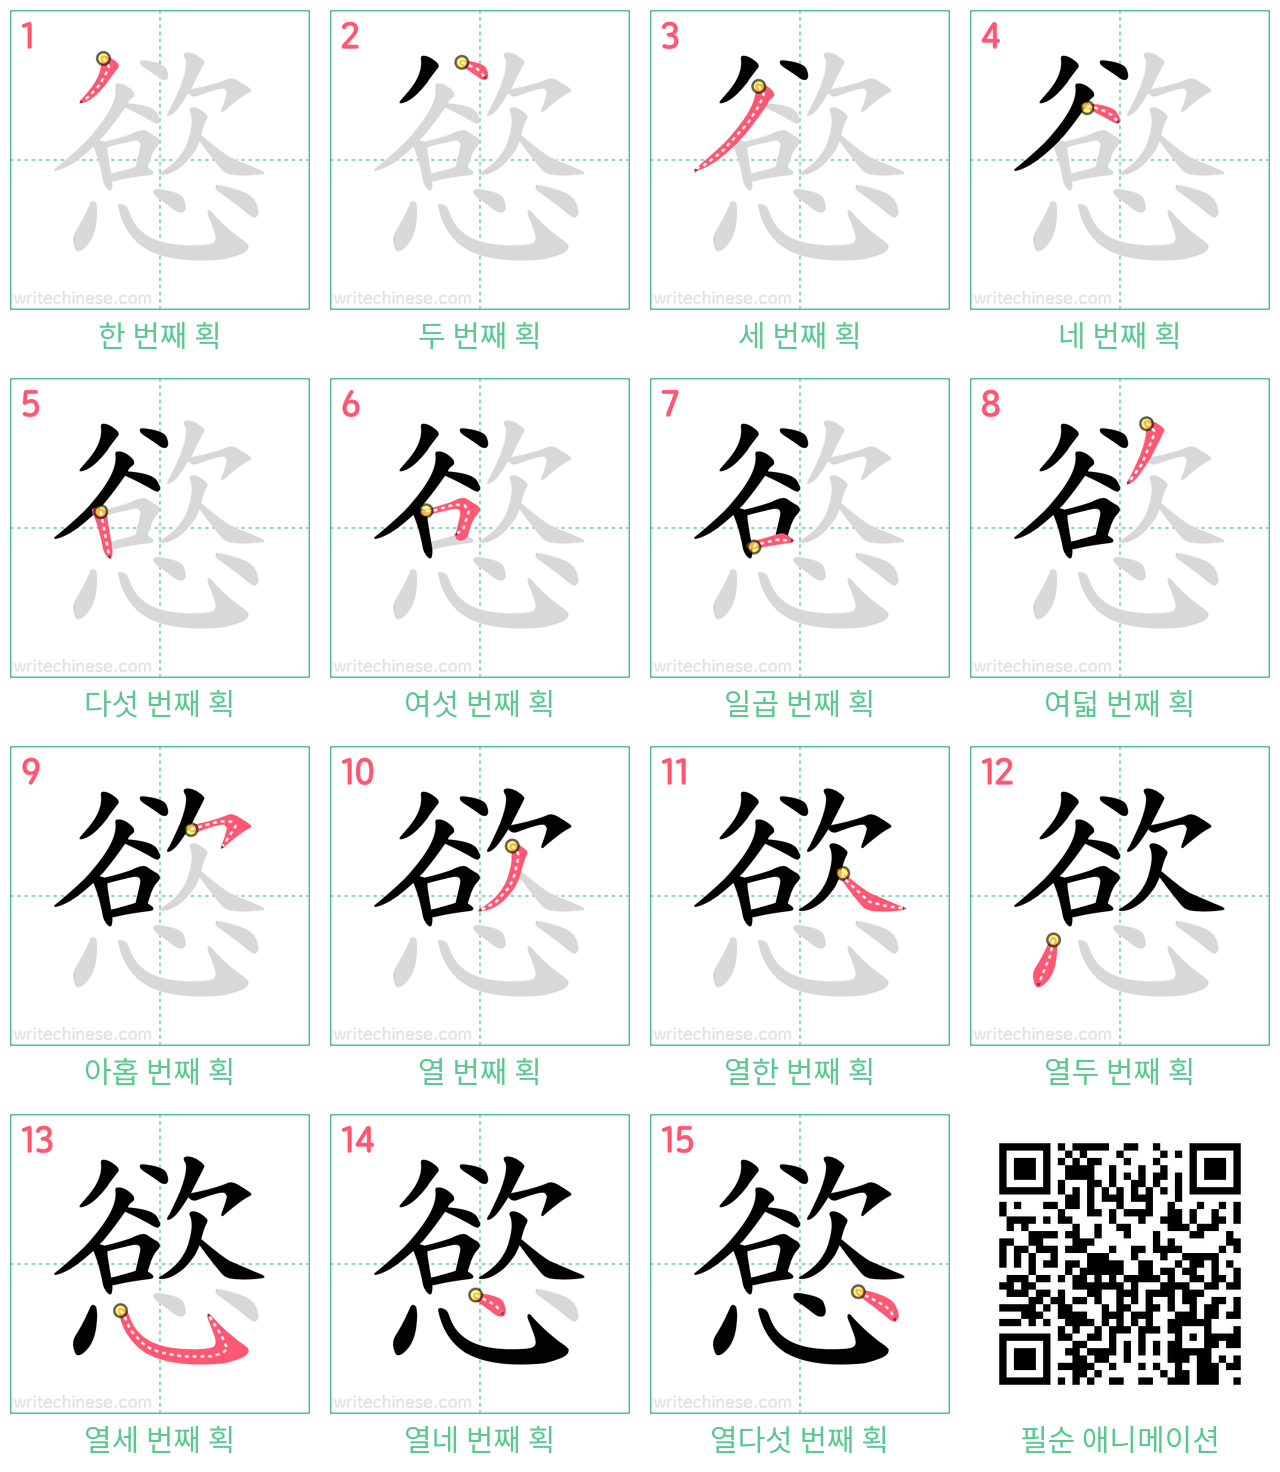 慾 step-by-step stroke order diagrams